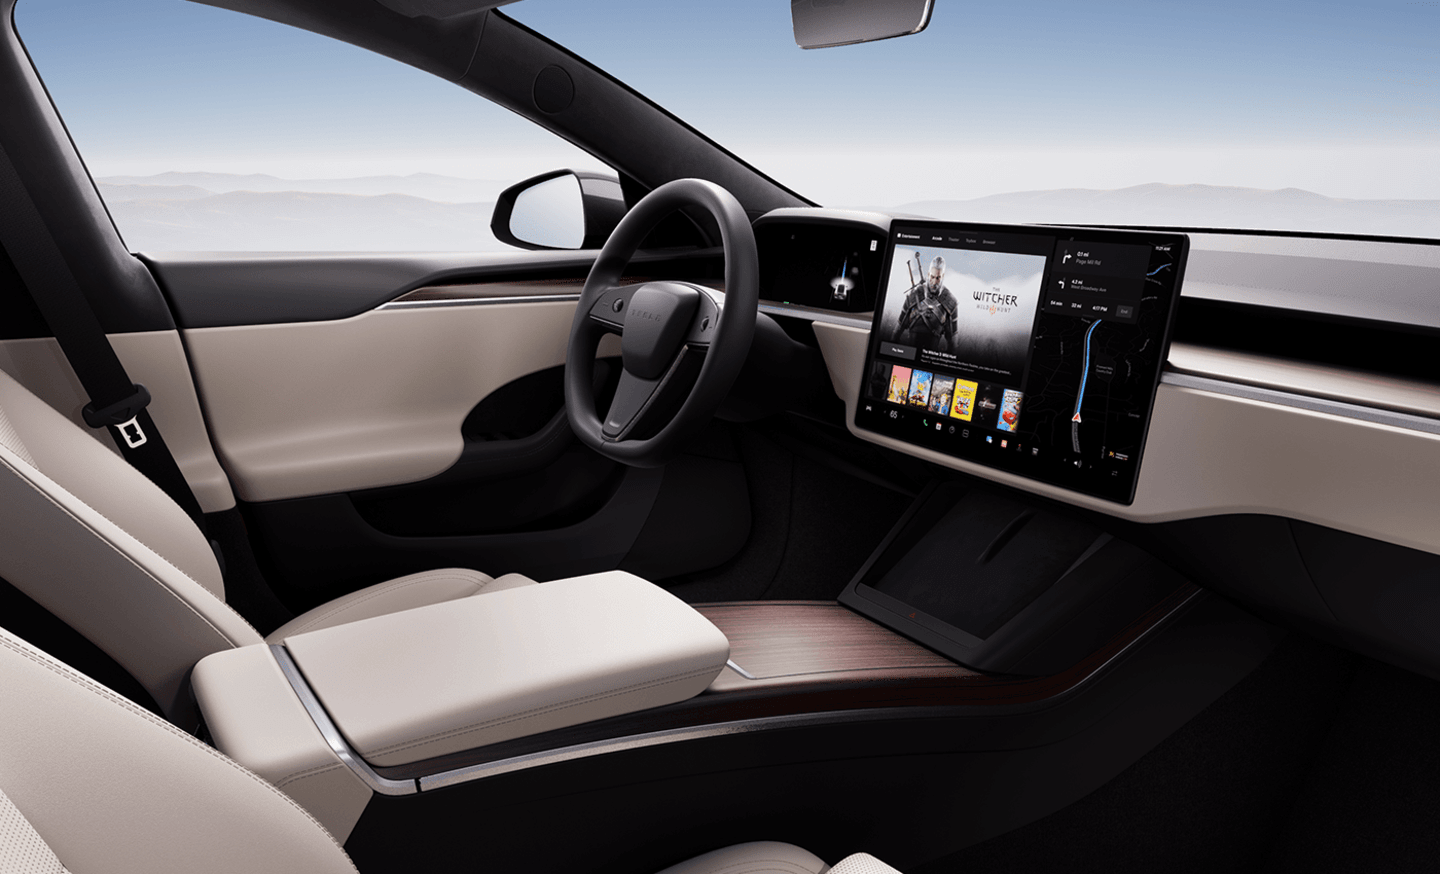 Opgewonden zijn convergentie achterstalligheid New & Used Electric Cars | Tesla